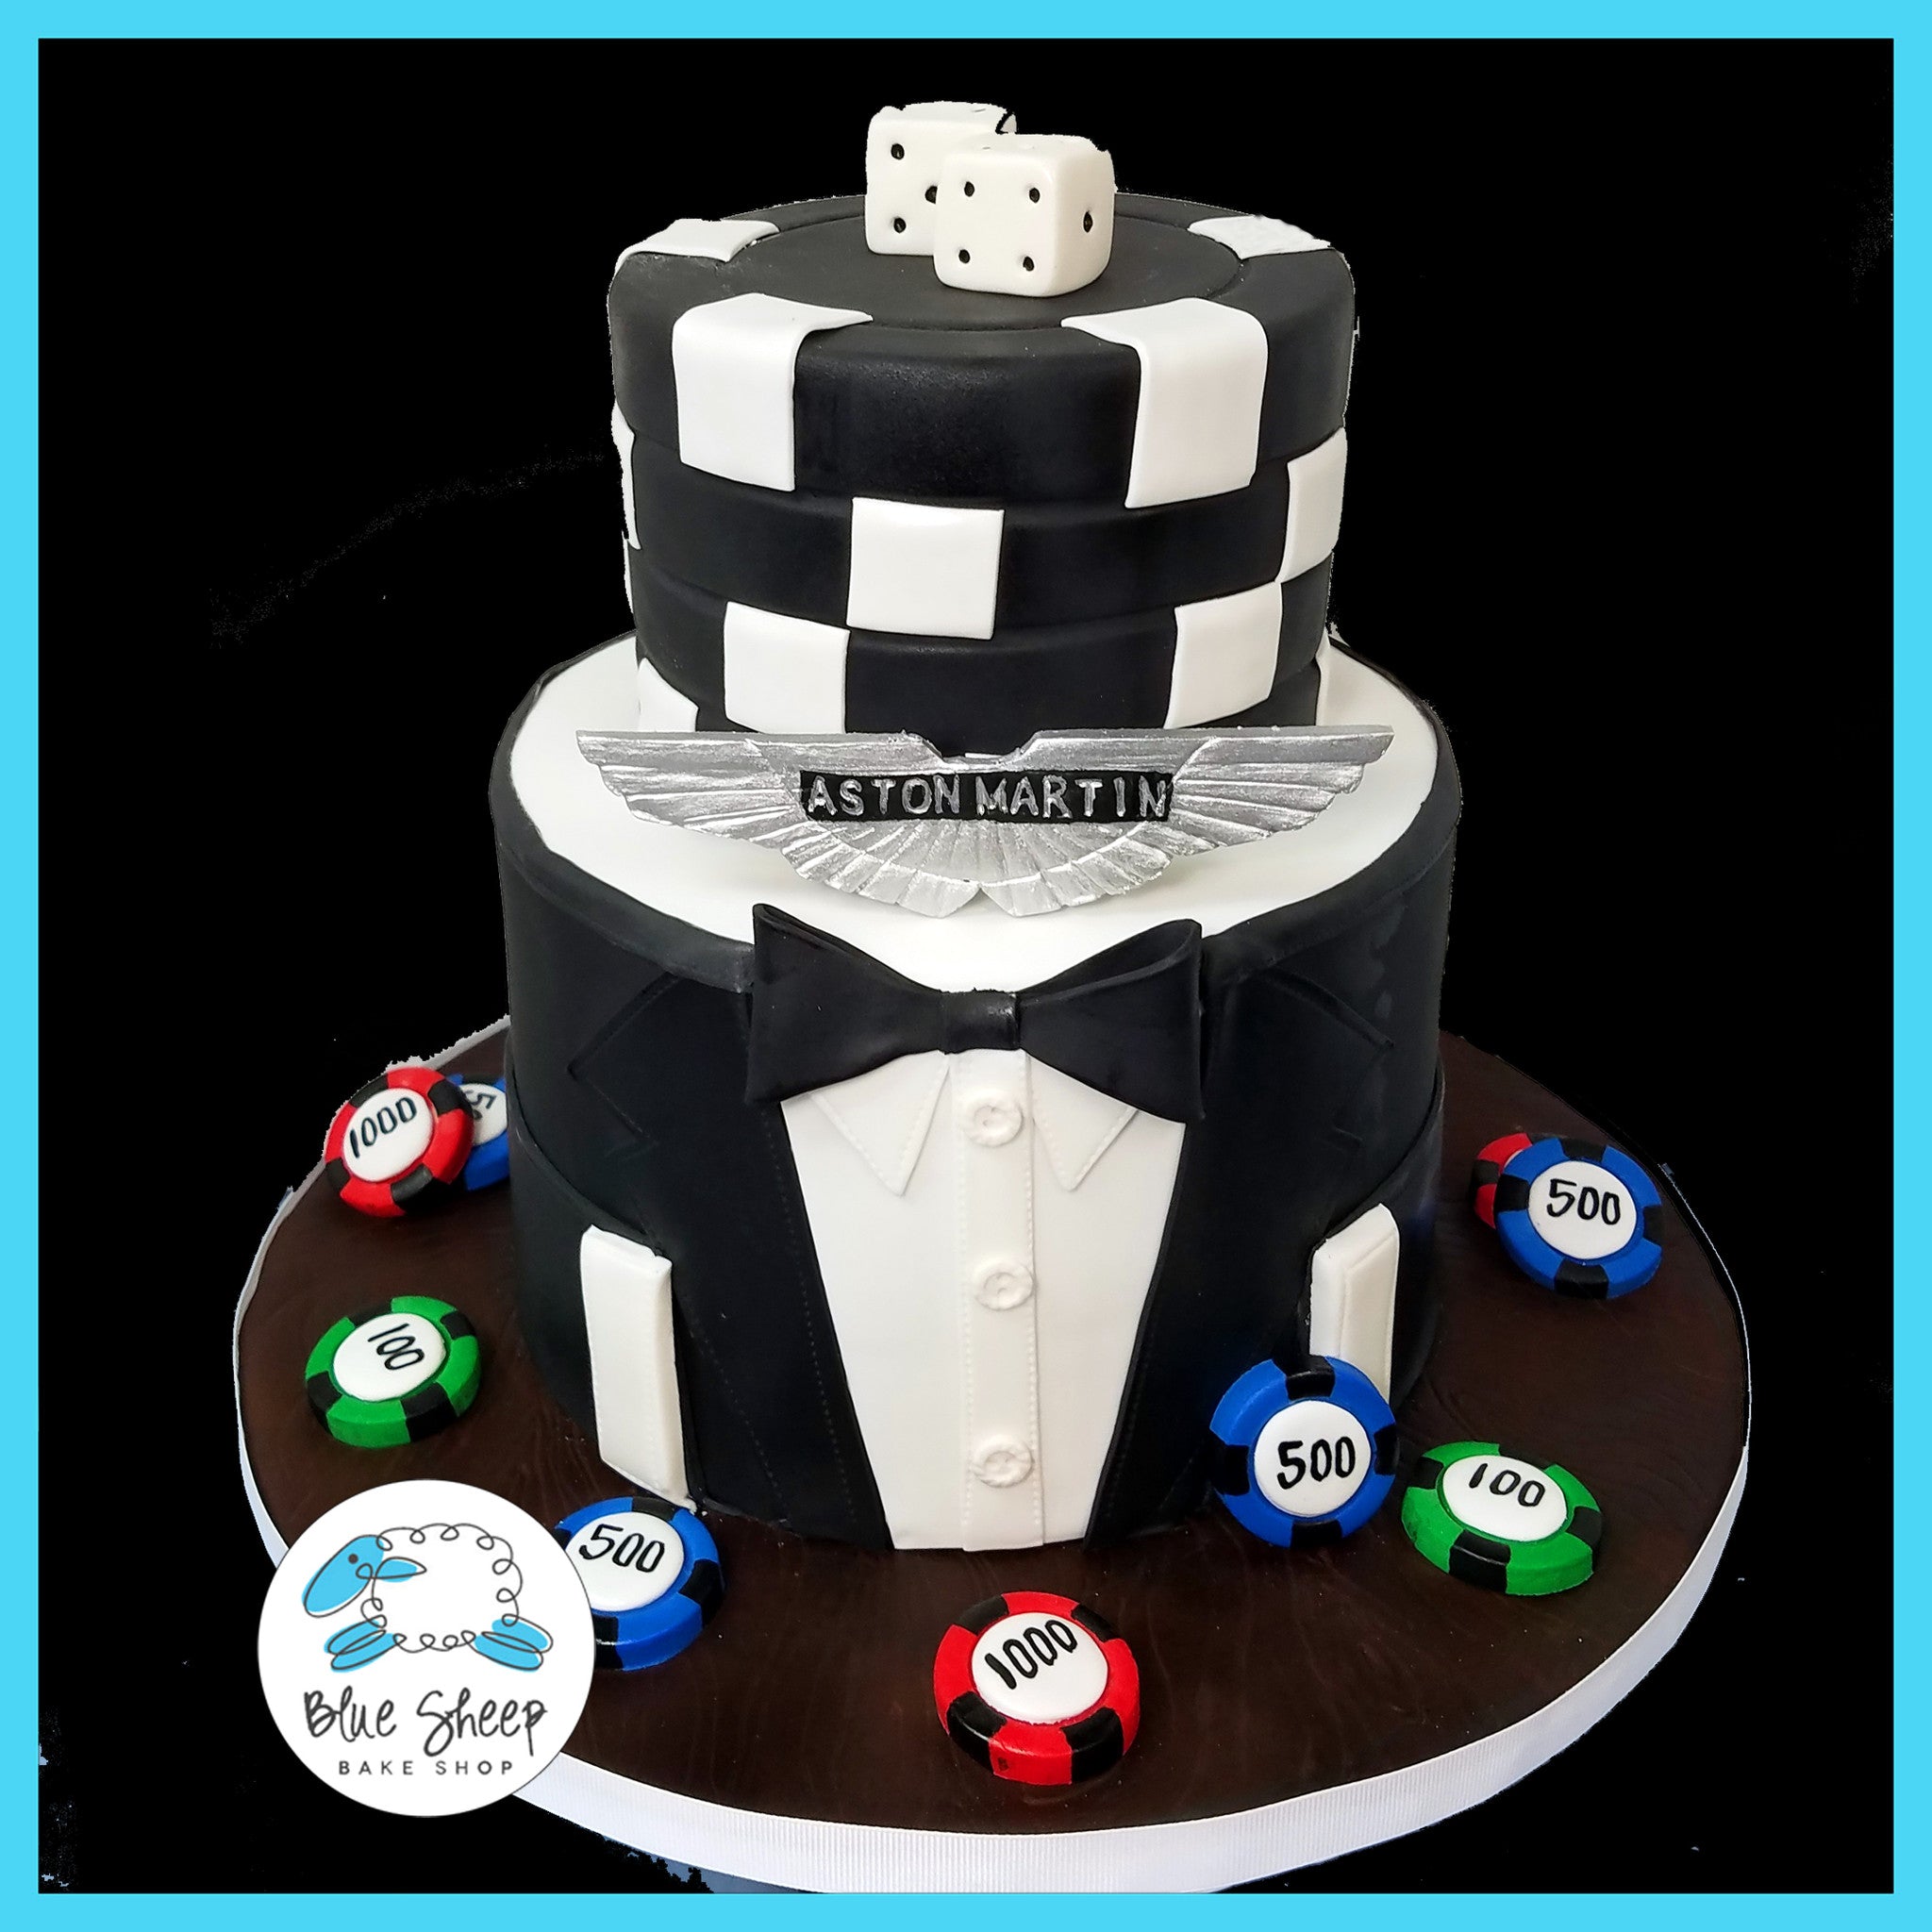 James Bond 007 cake | James bond cake, Cake, Casino cakes